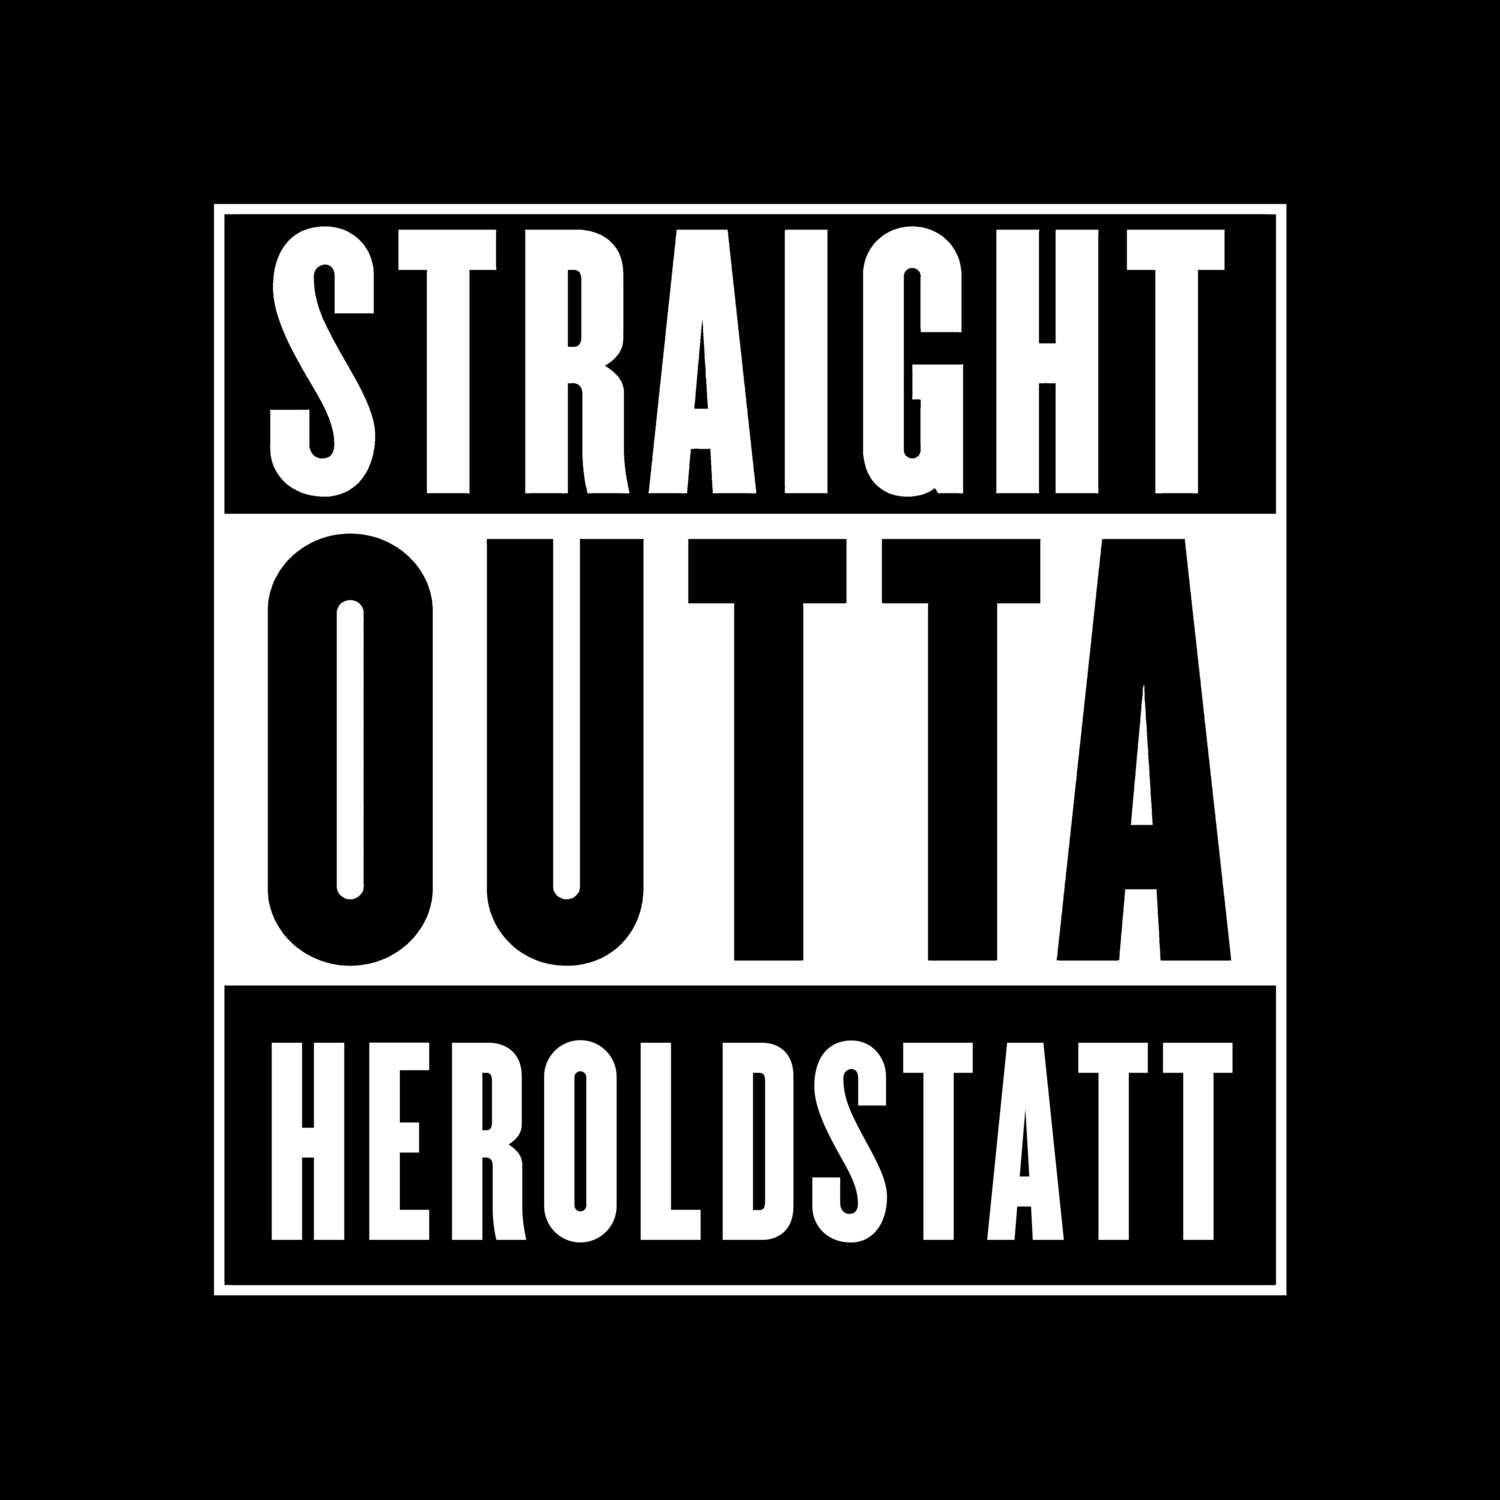 Heroldstatt T-Shirt »Straight Outta«